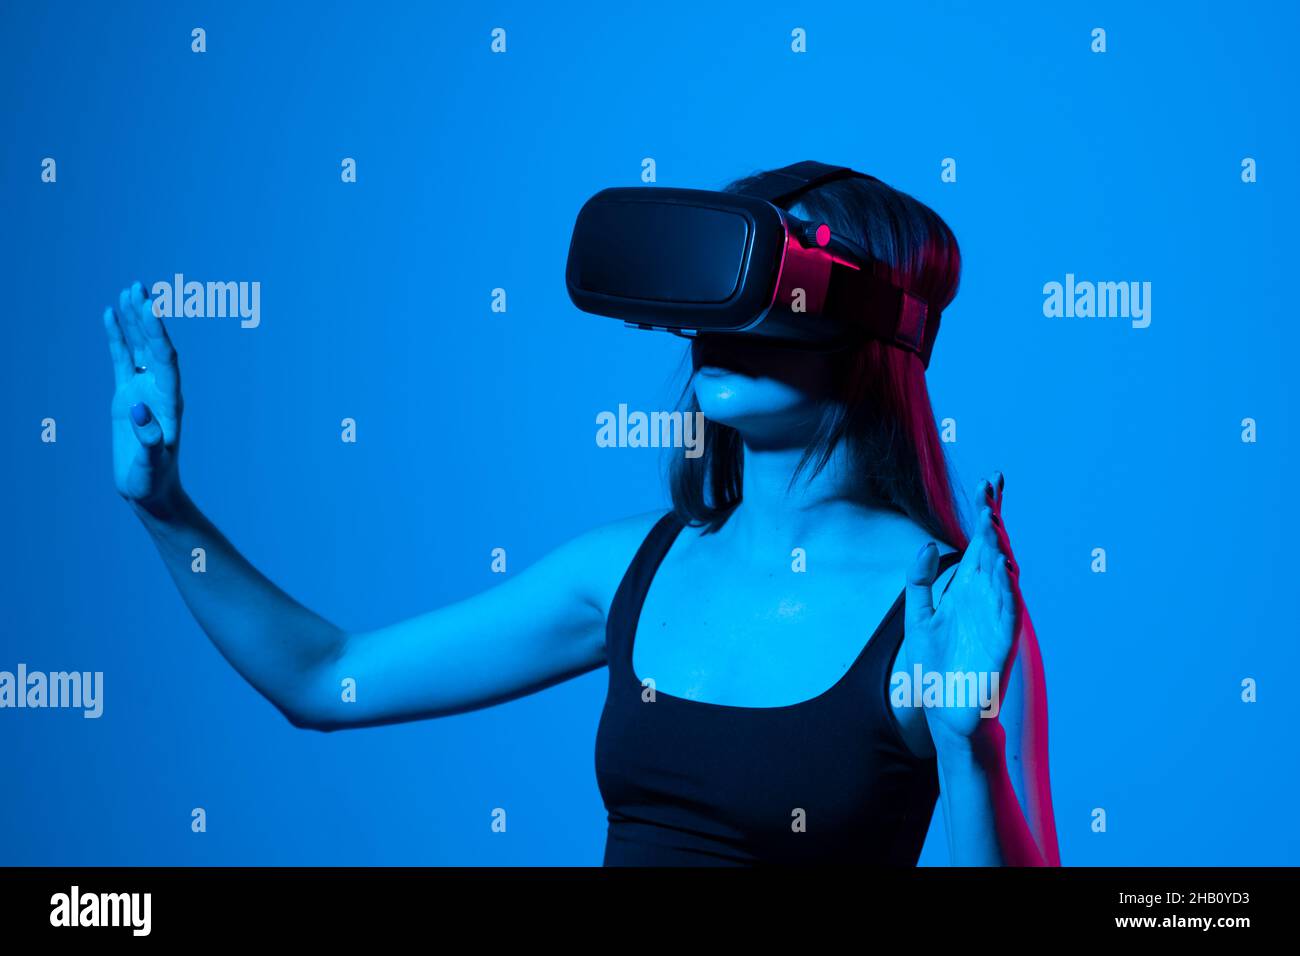 Jeune femme utilisant un casque VR pour interagir avec un métaverse en utilisant des gestes de glissement et d'étirement.Regarder des vidéos 3d de réalité virtuelle.Fille en VR Banque D'Images